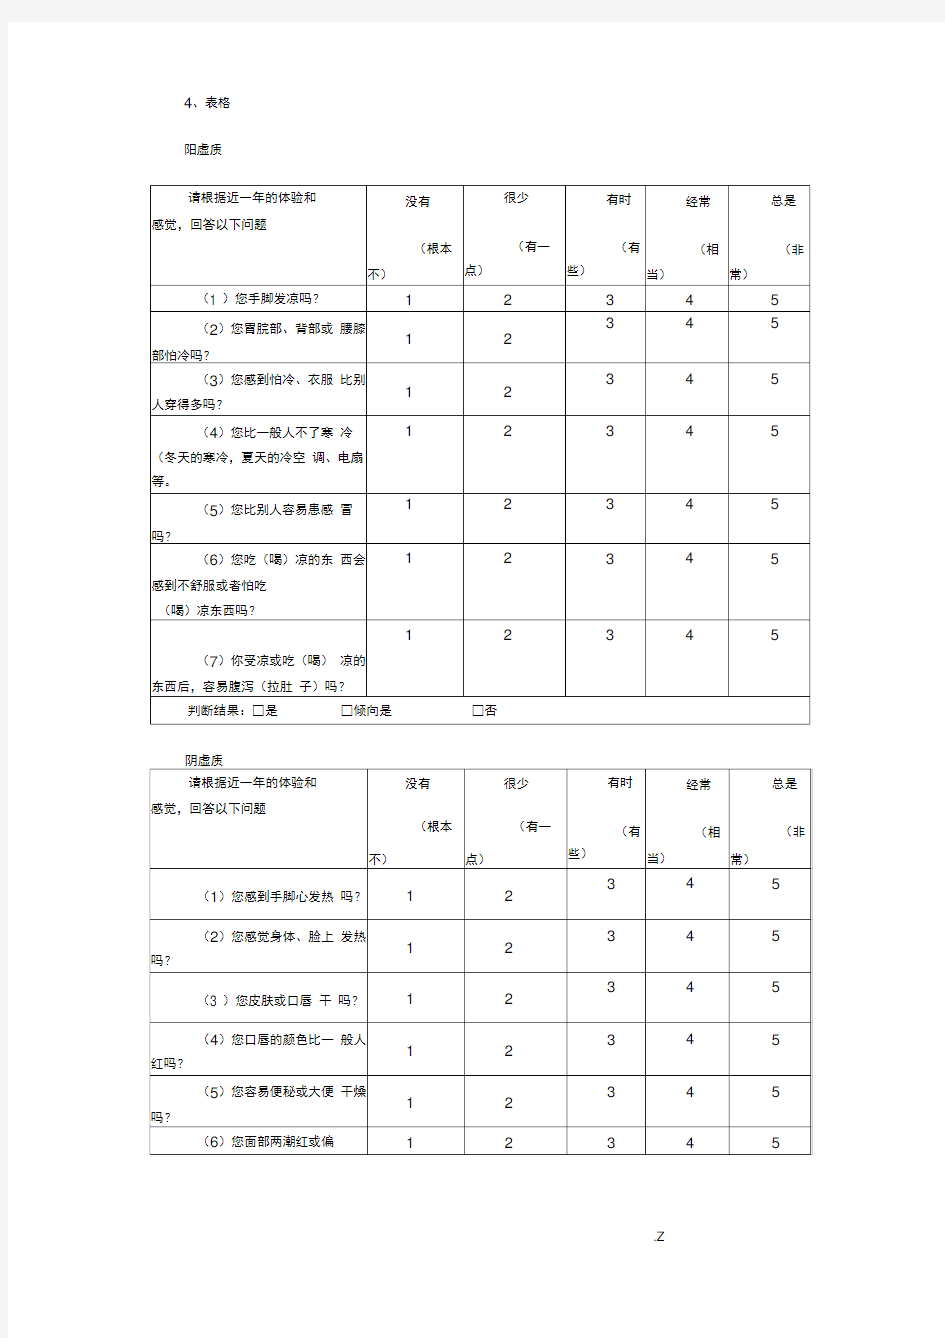 中医体质辨识标准(评分表)